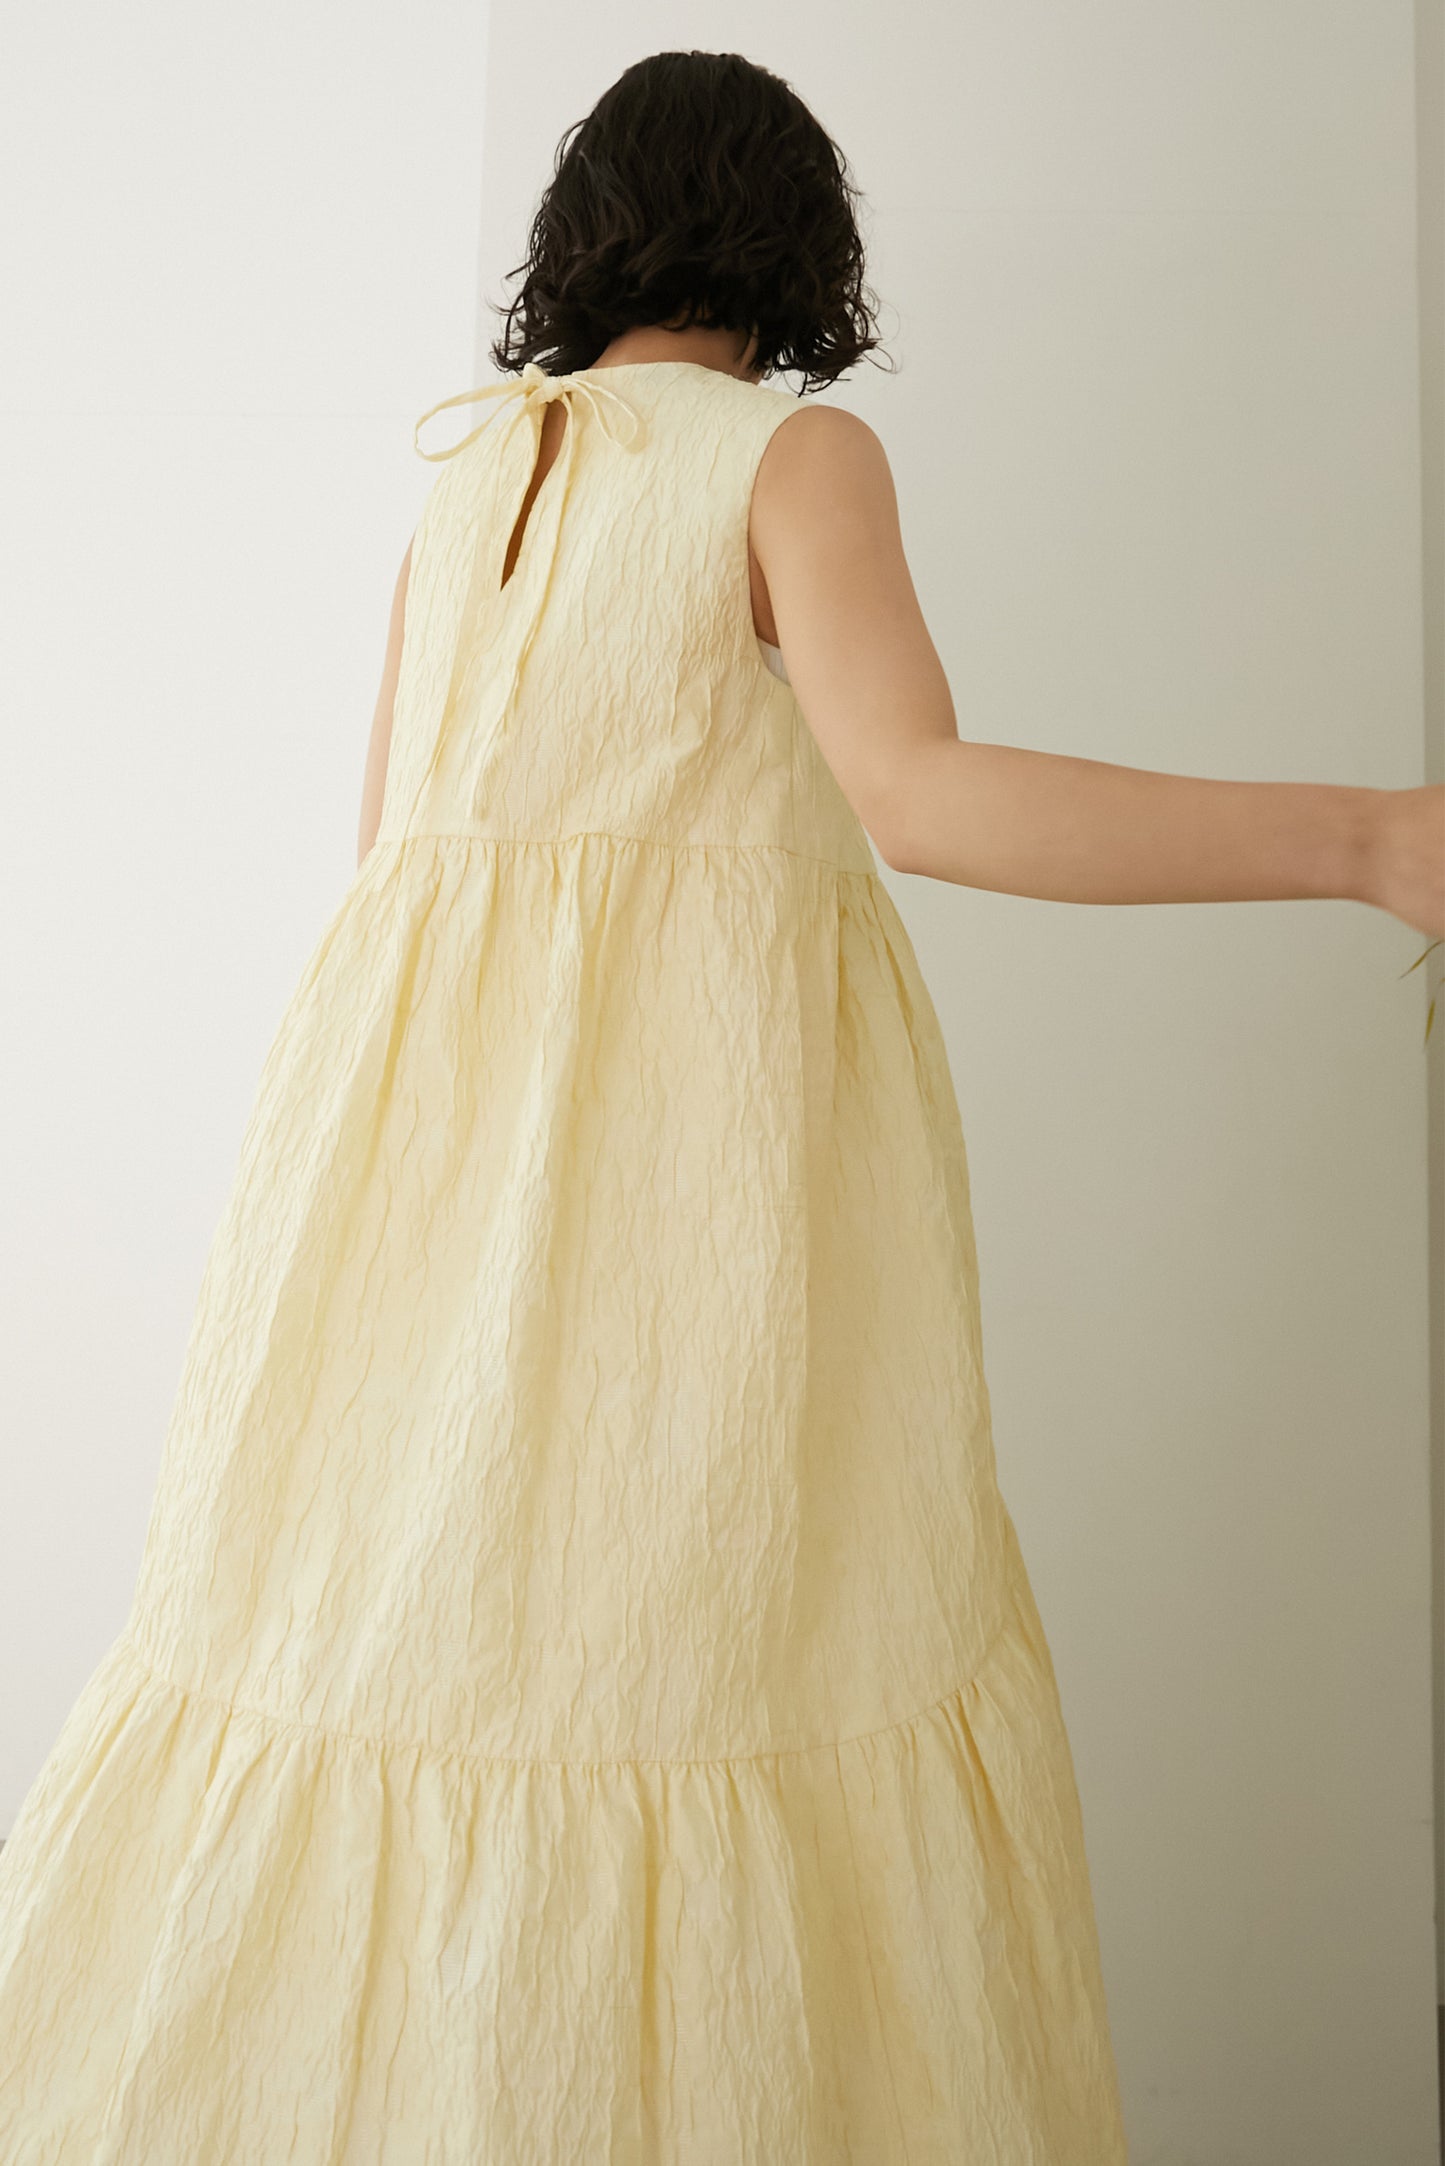 ELLIE ジャガードサマードレス yellow タグ付き新品未使用 - ロング